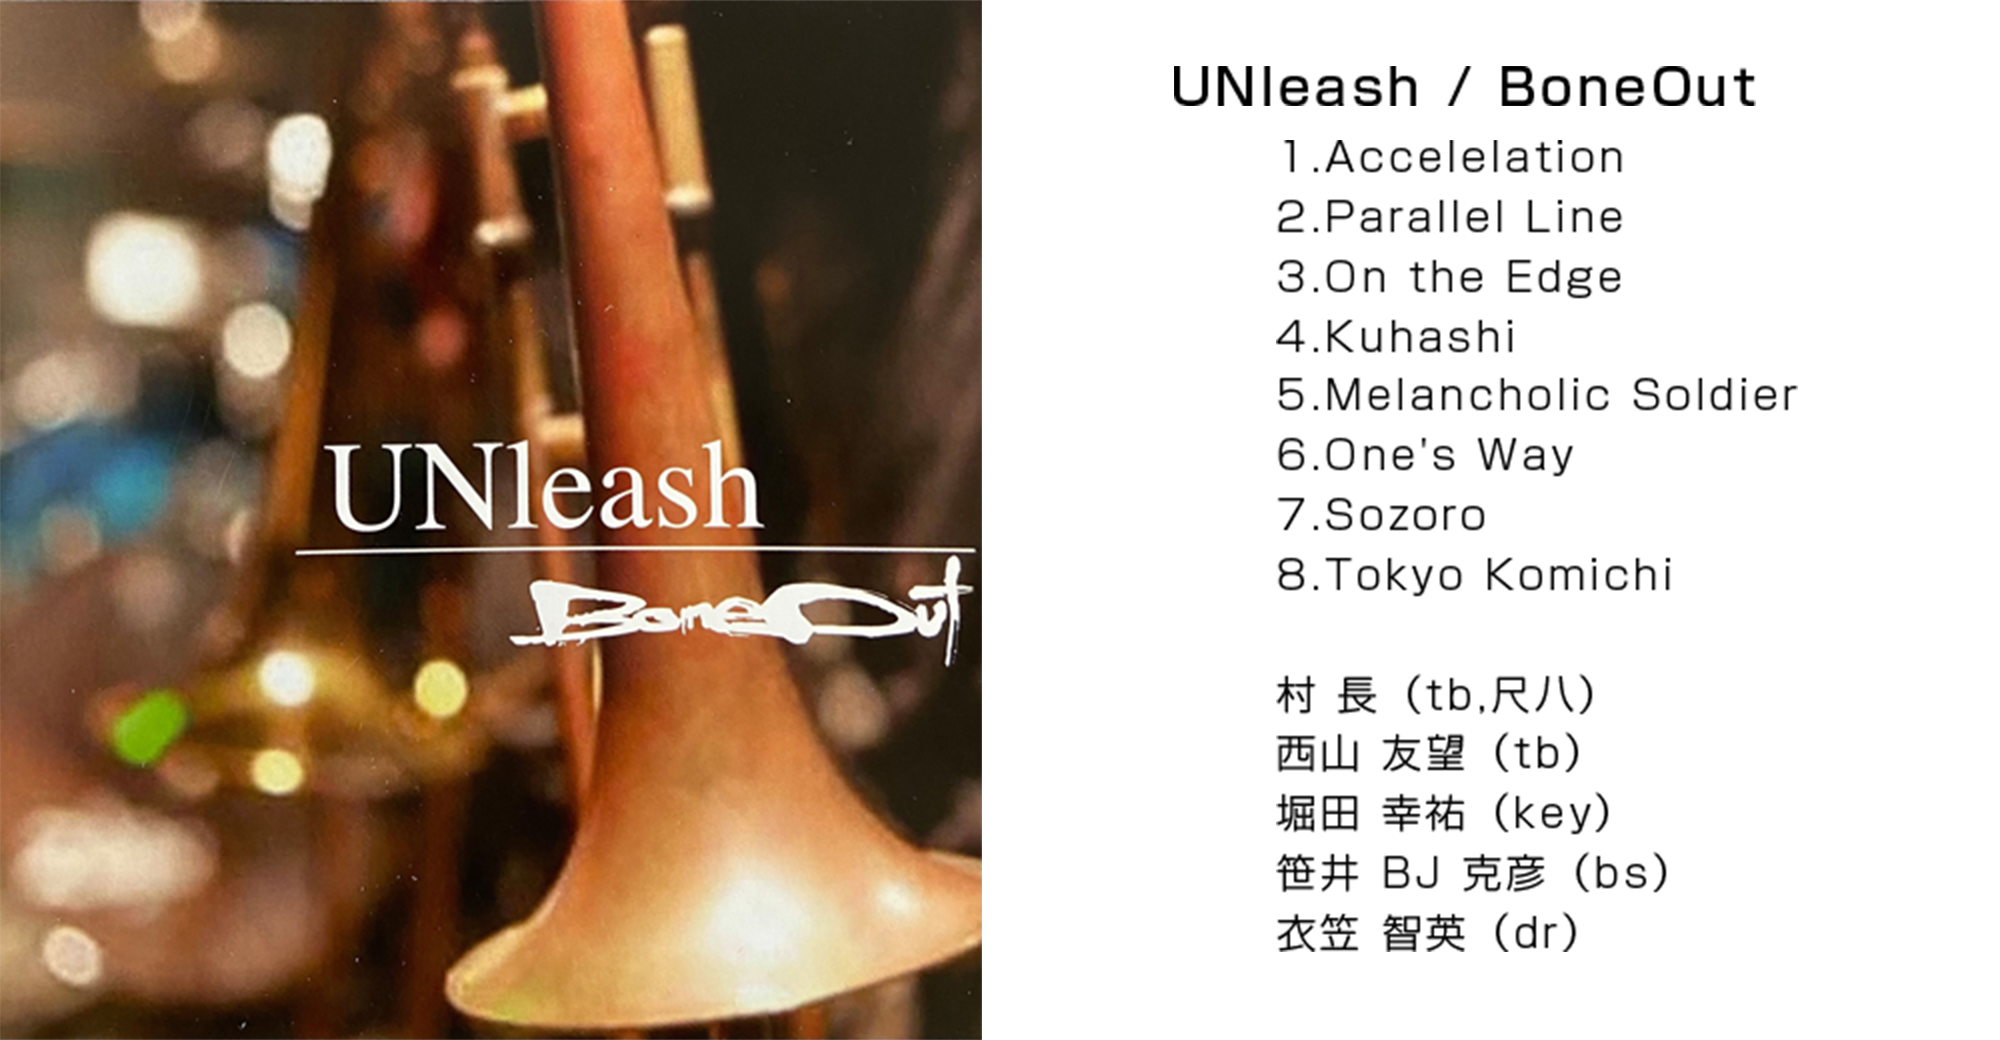 UNleash / BoneOut